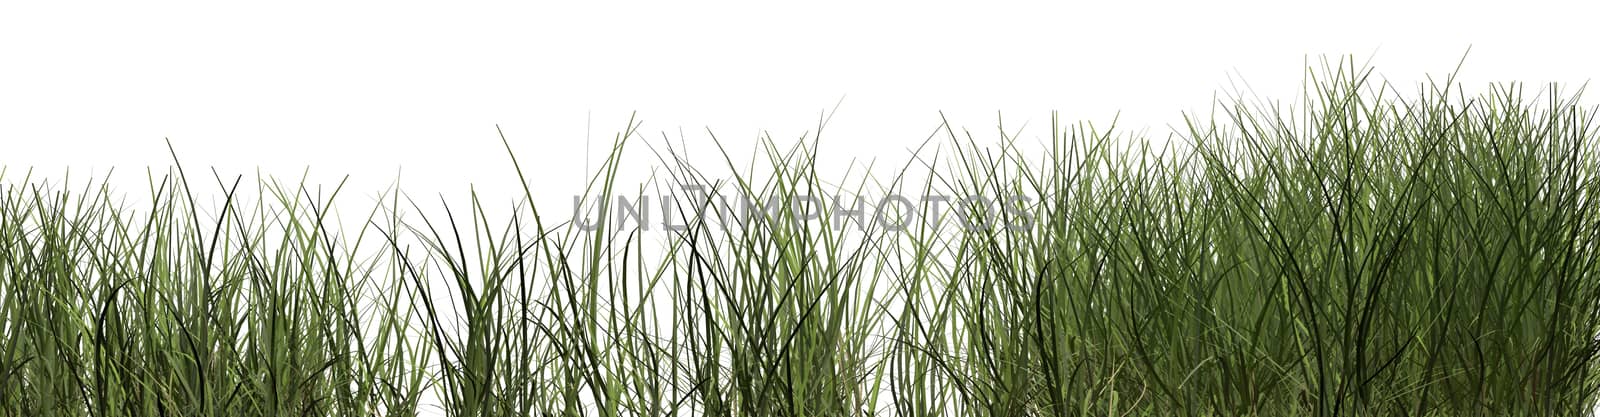 grass by vitanovski